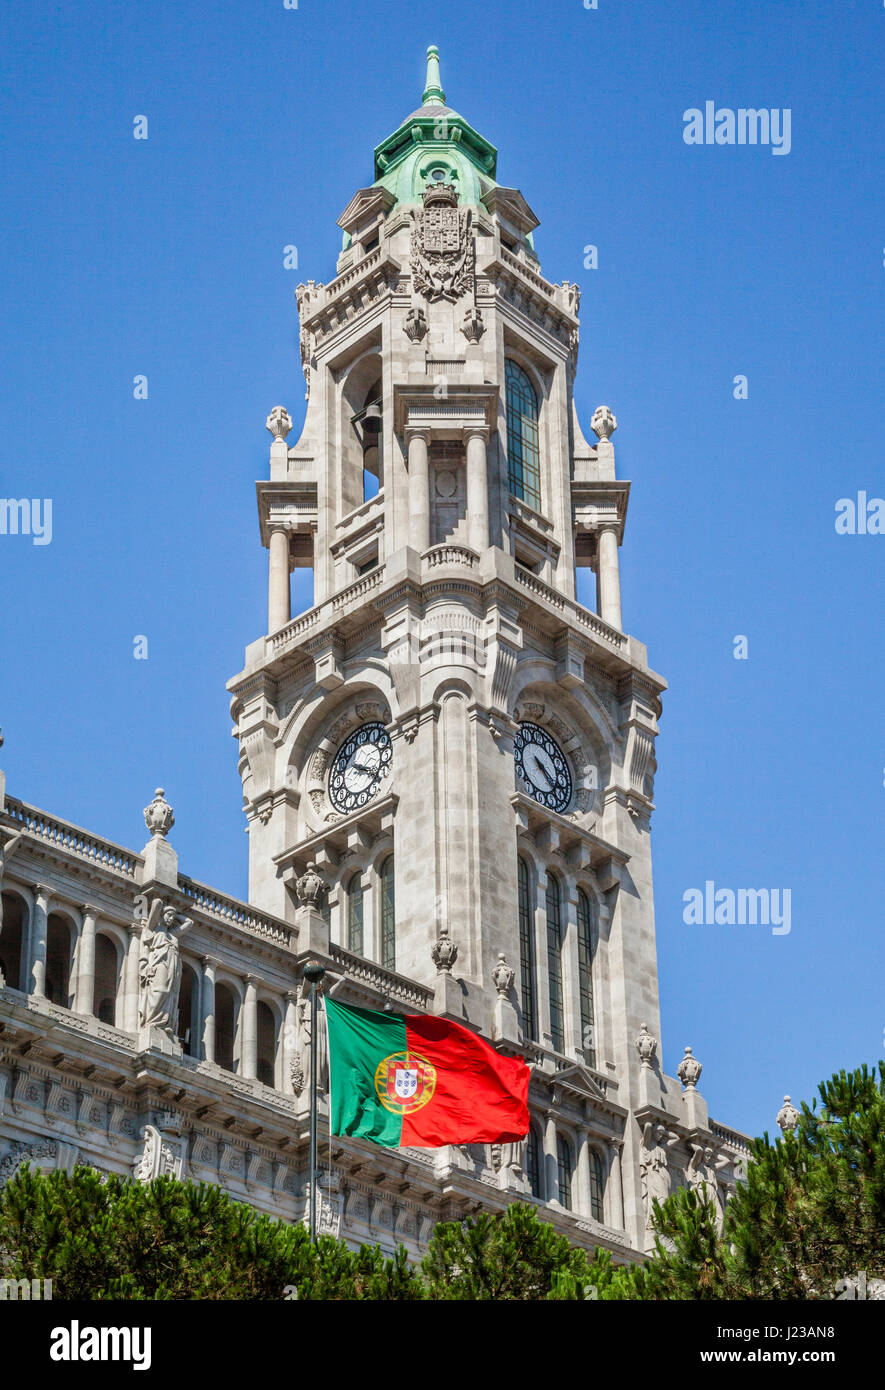 Portugal, région Norte, Porto, vue de l'imposante tour de l'horloge de 70 mètres de l'Hôtel de ville de Porto avec drapeau portugais Banque D'Images